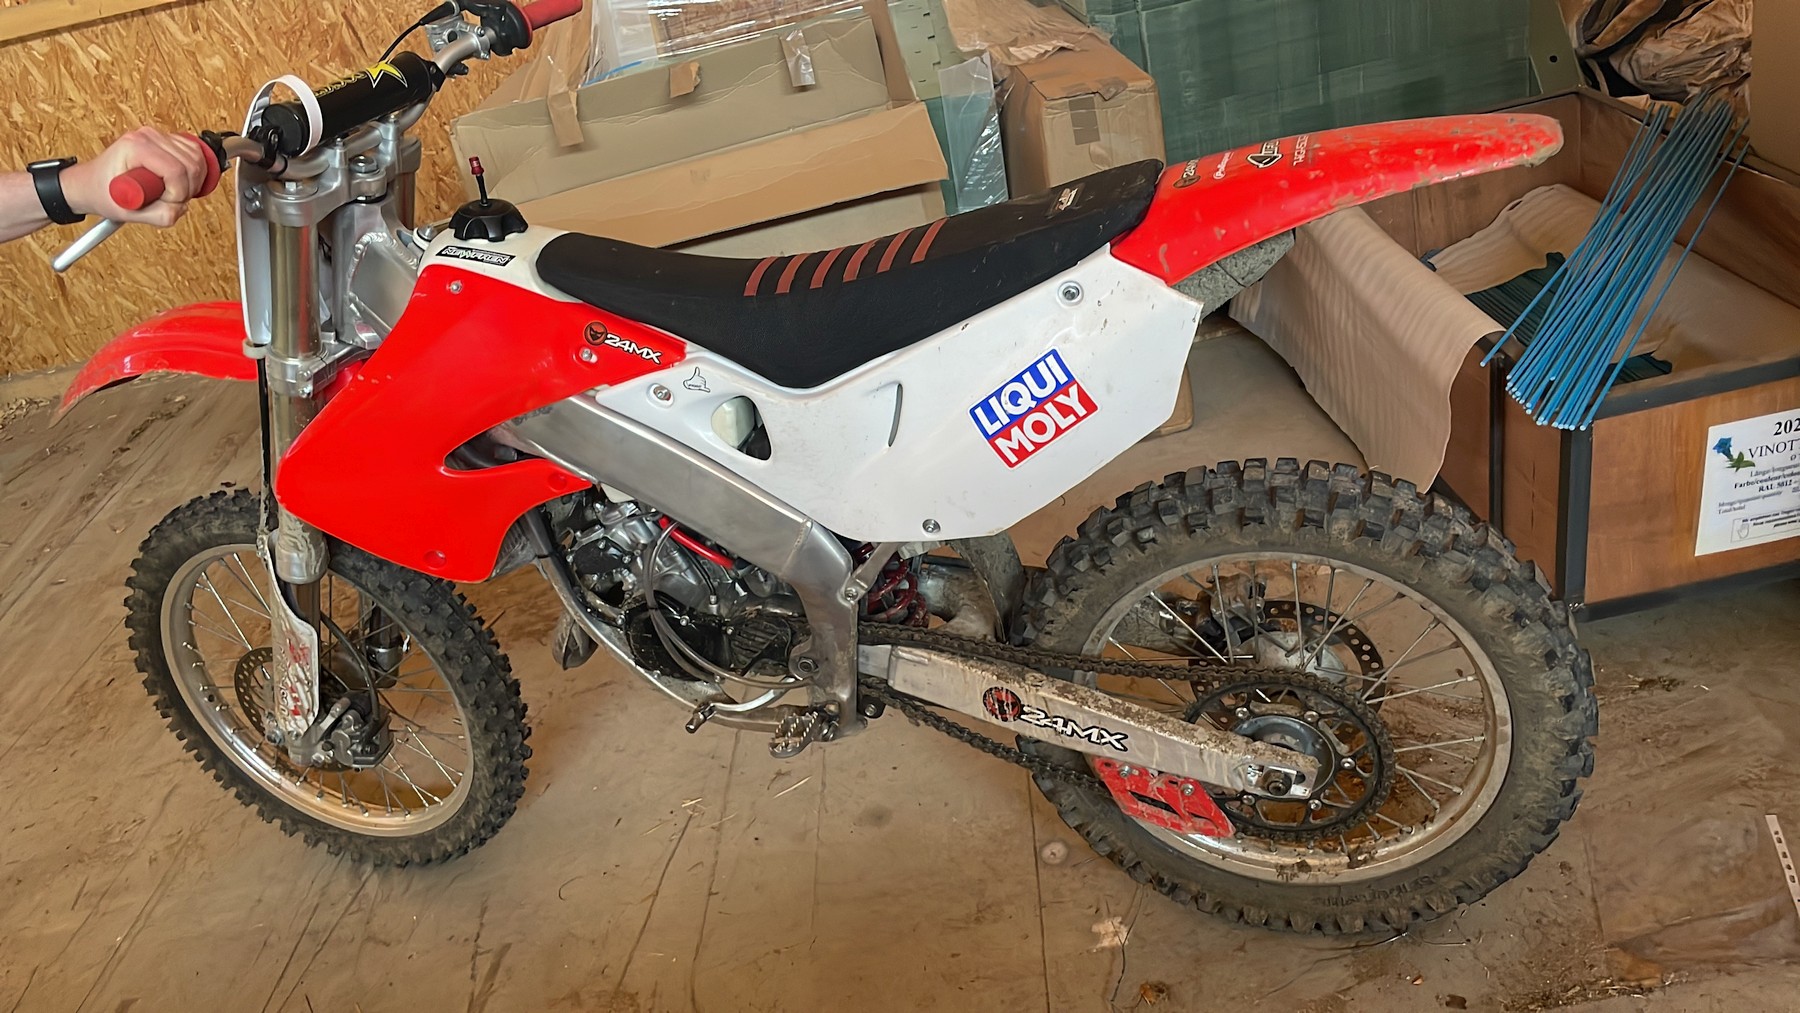 Flucht auf Motocross-Maschine – Neumarkter Polizei ermittelt wegen mehreren Straftaten